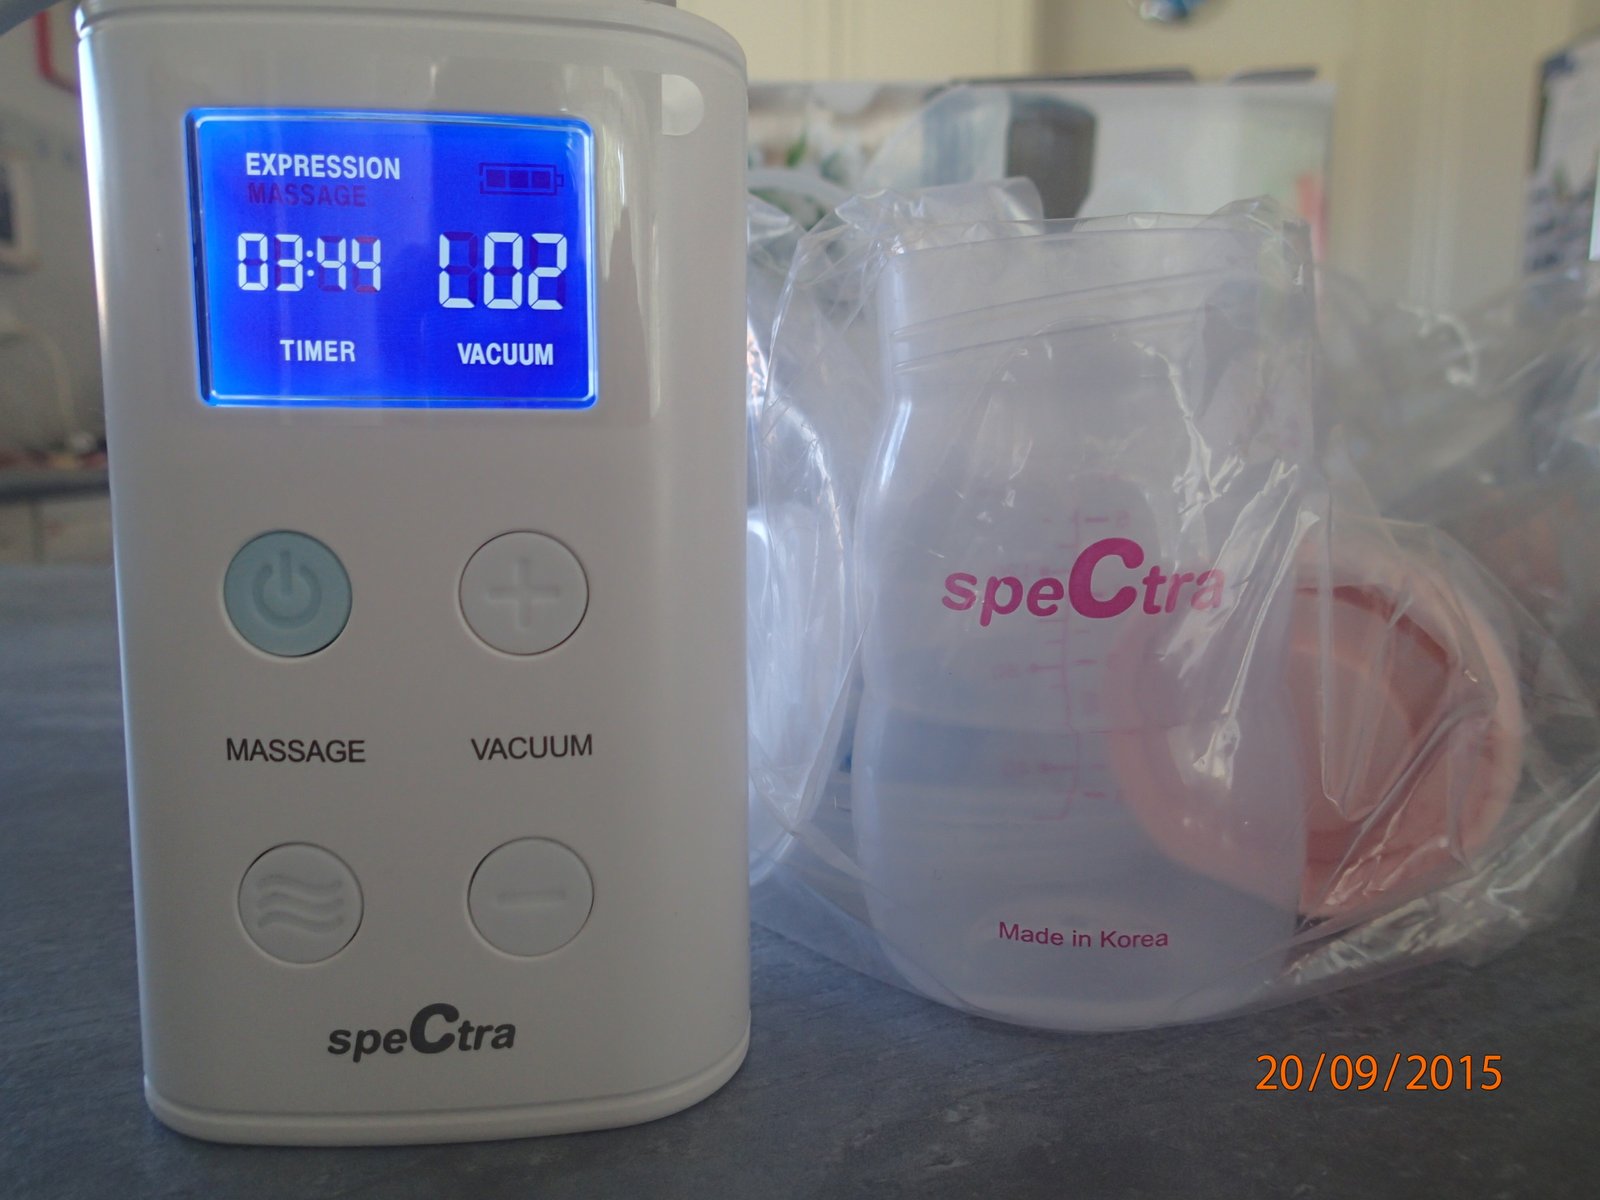 S9 Spectrs breast pump